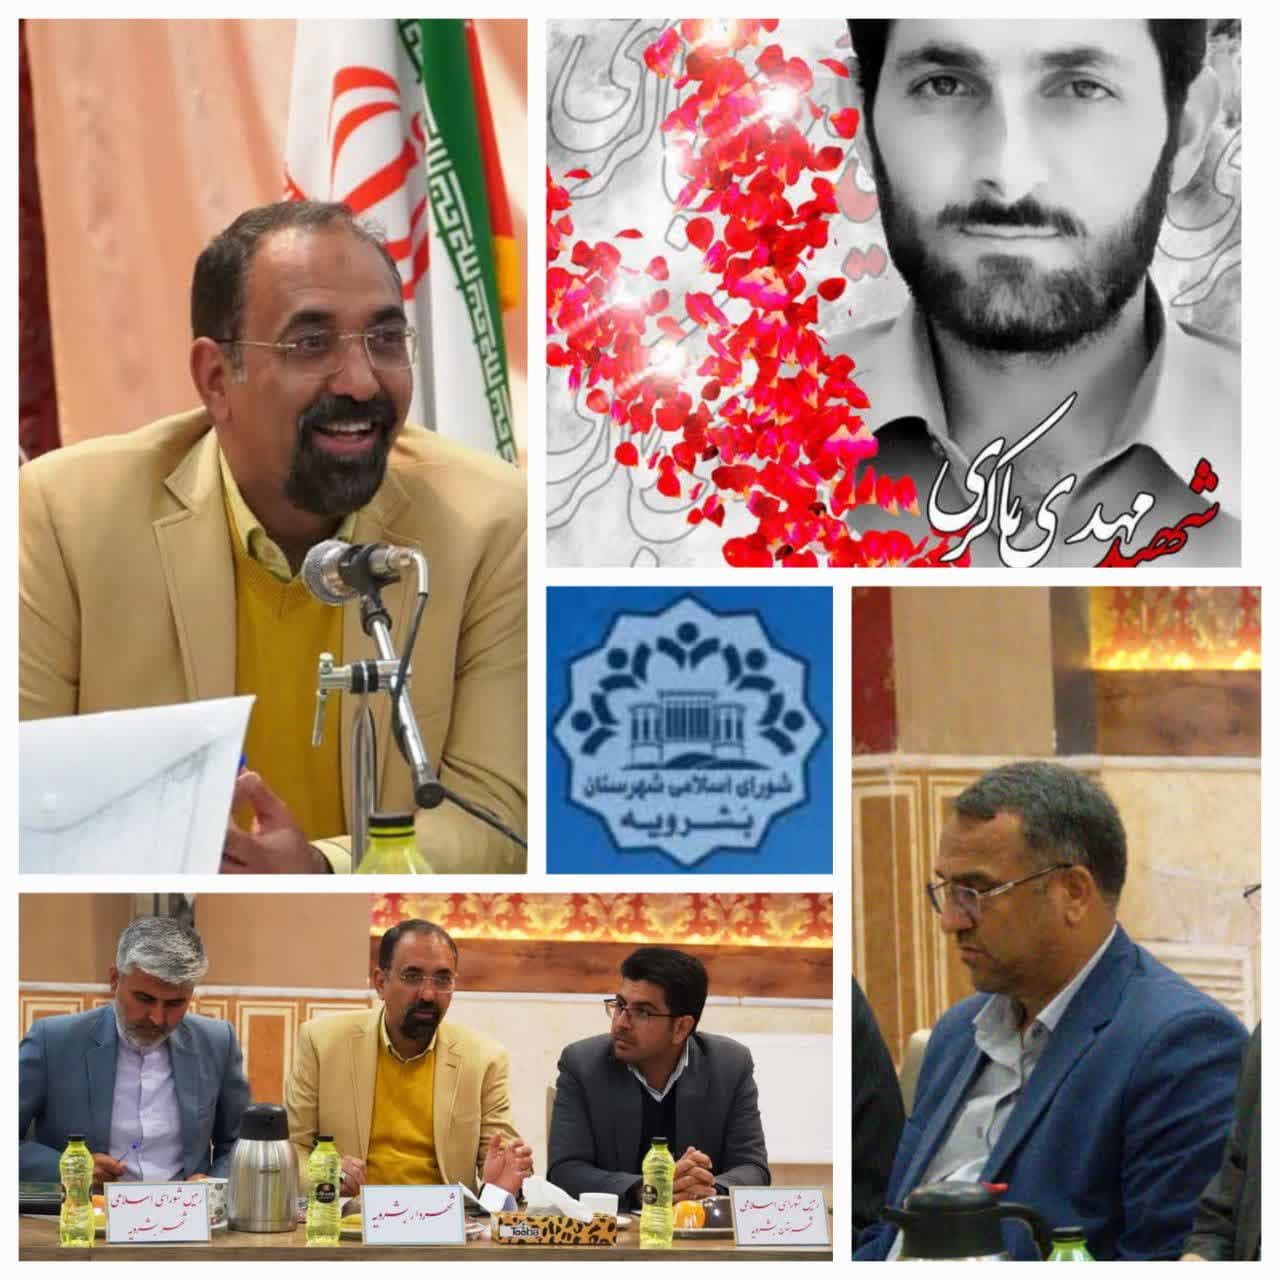 رئیس شورای اسلامی شهرستان بشرویه روز شهردار را تبریک گفت.